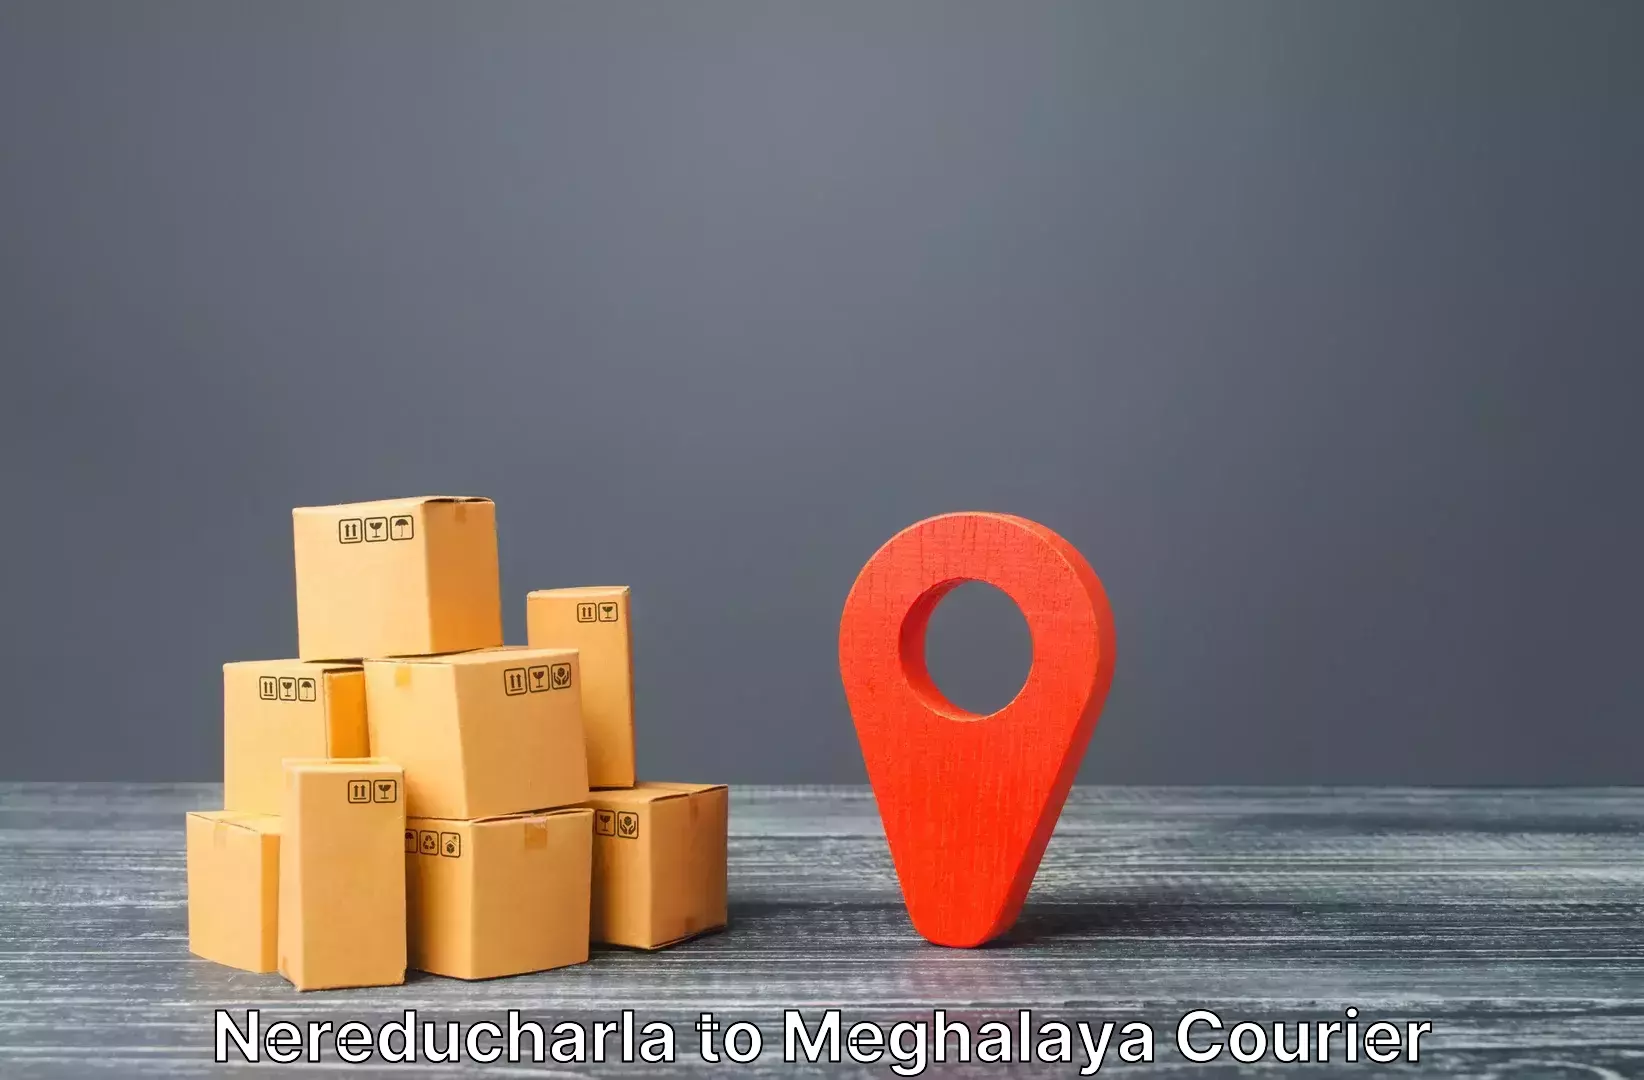 Luggage delivery network Nereducharla to NIT Meghalaya